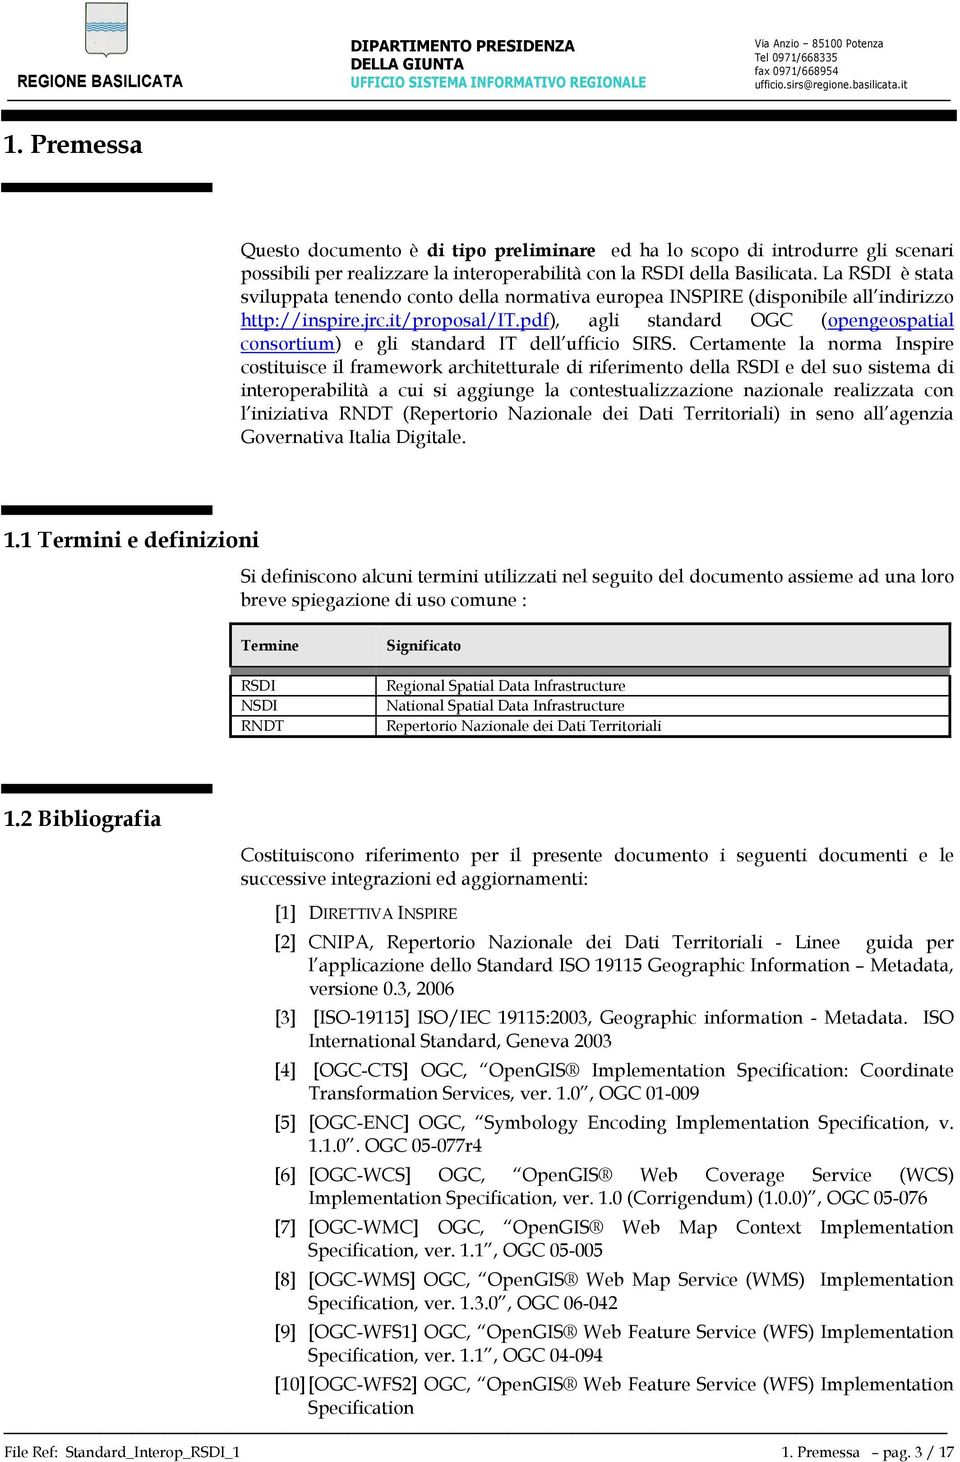 pdf), agli standard OGC (opengeospatial consortium) e gli standard IT dell ufficio SIRS.